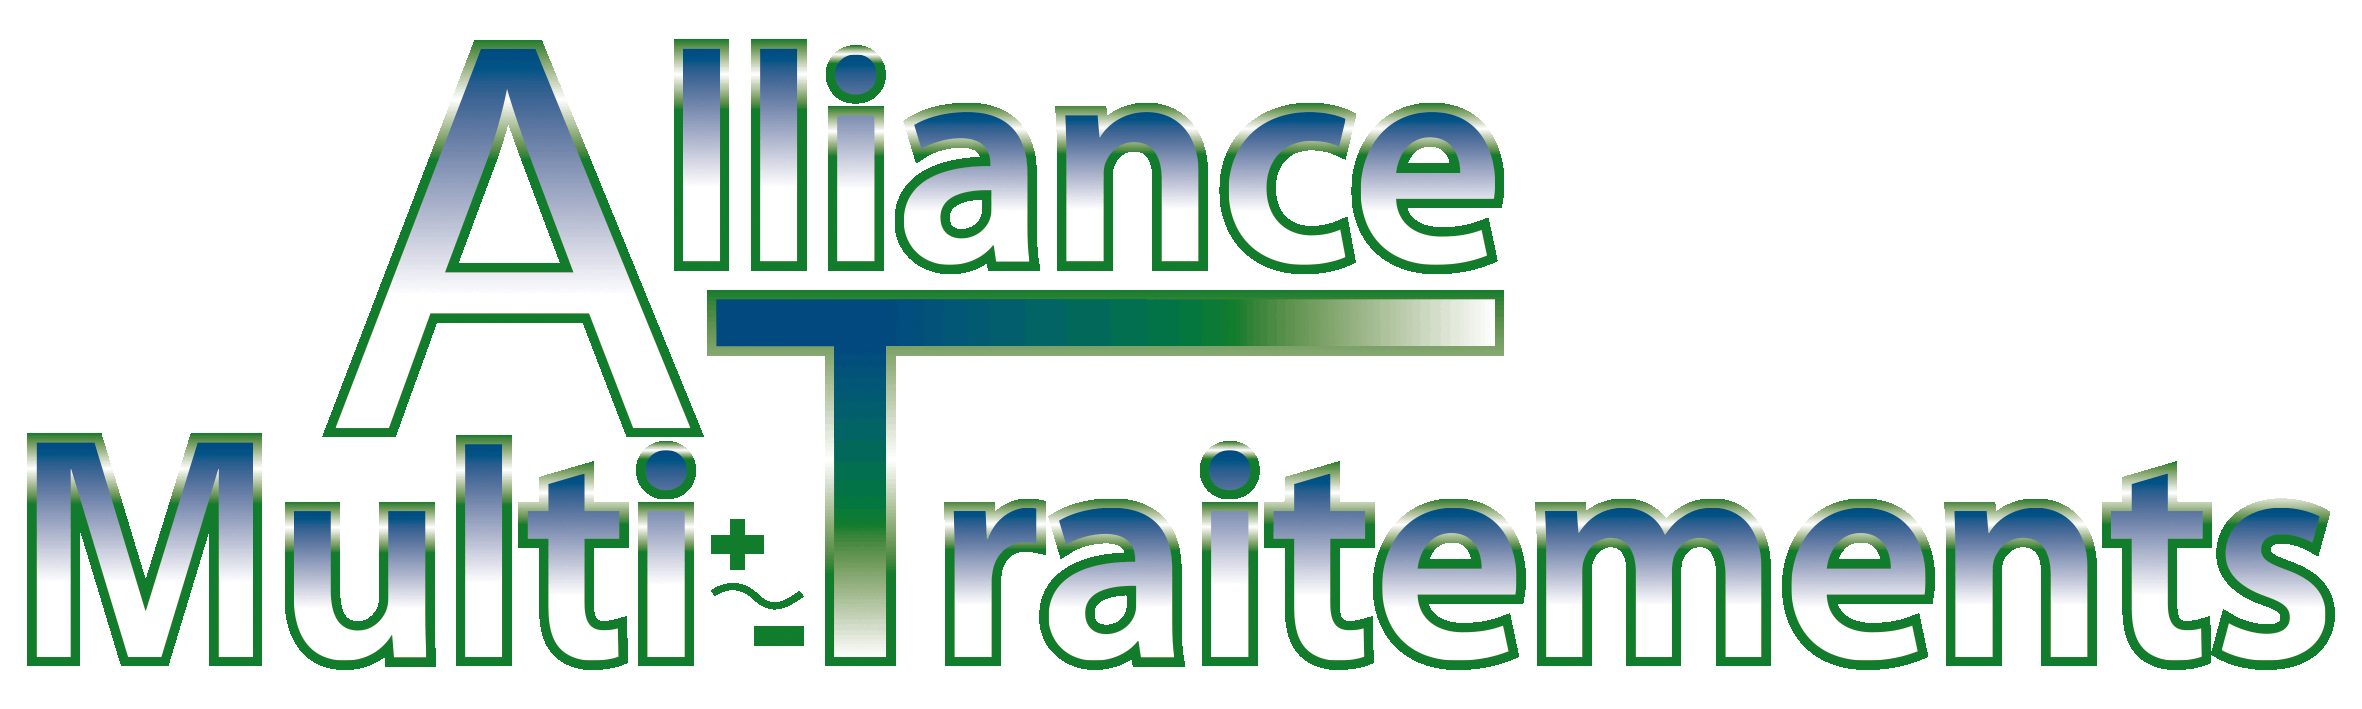 Alliance Multi-Traitements